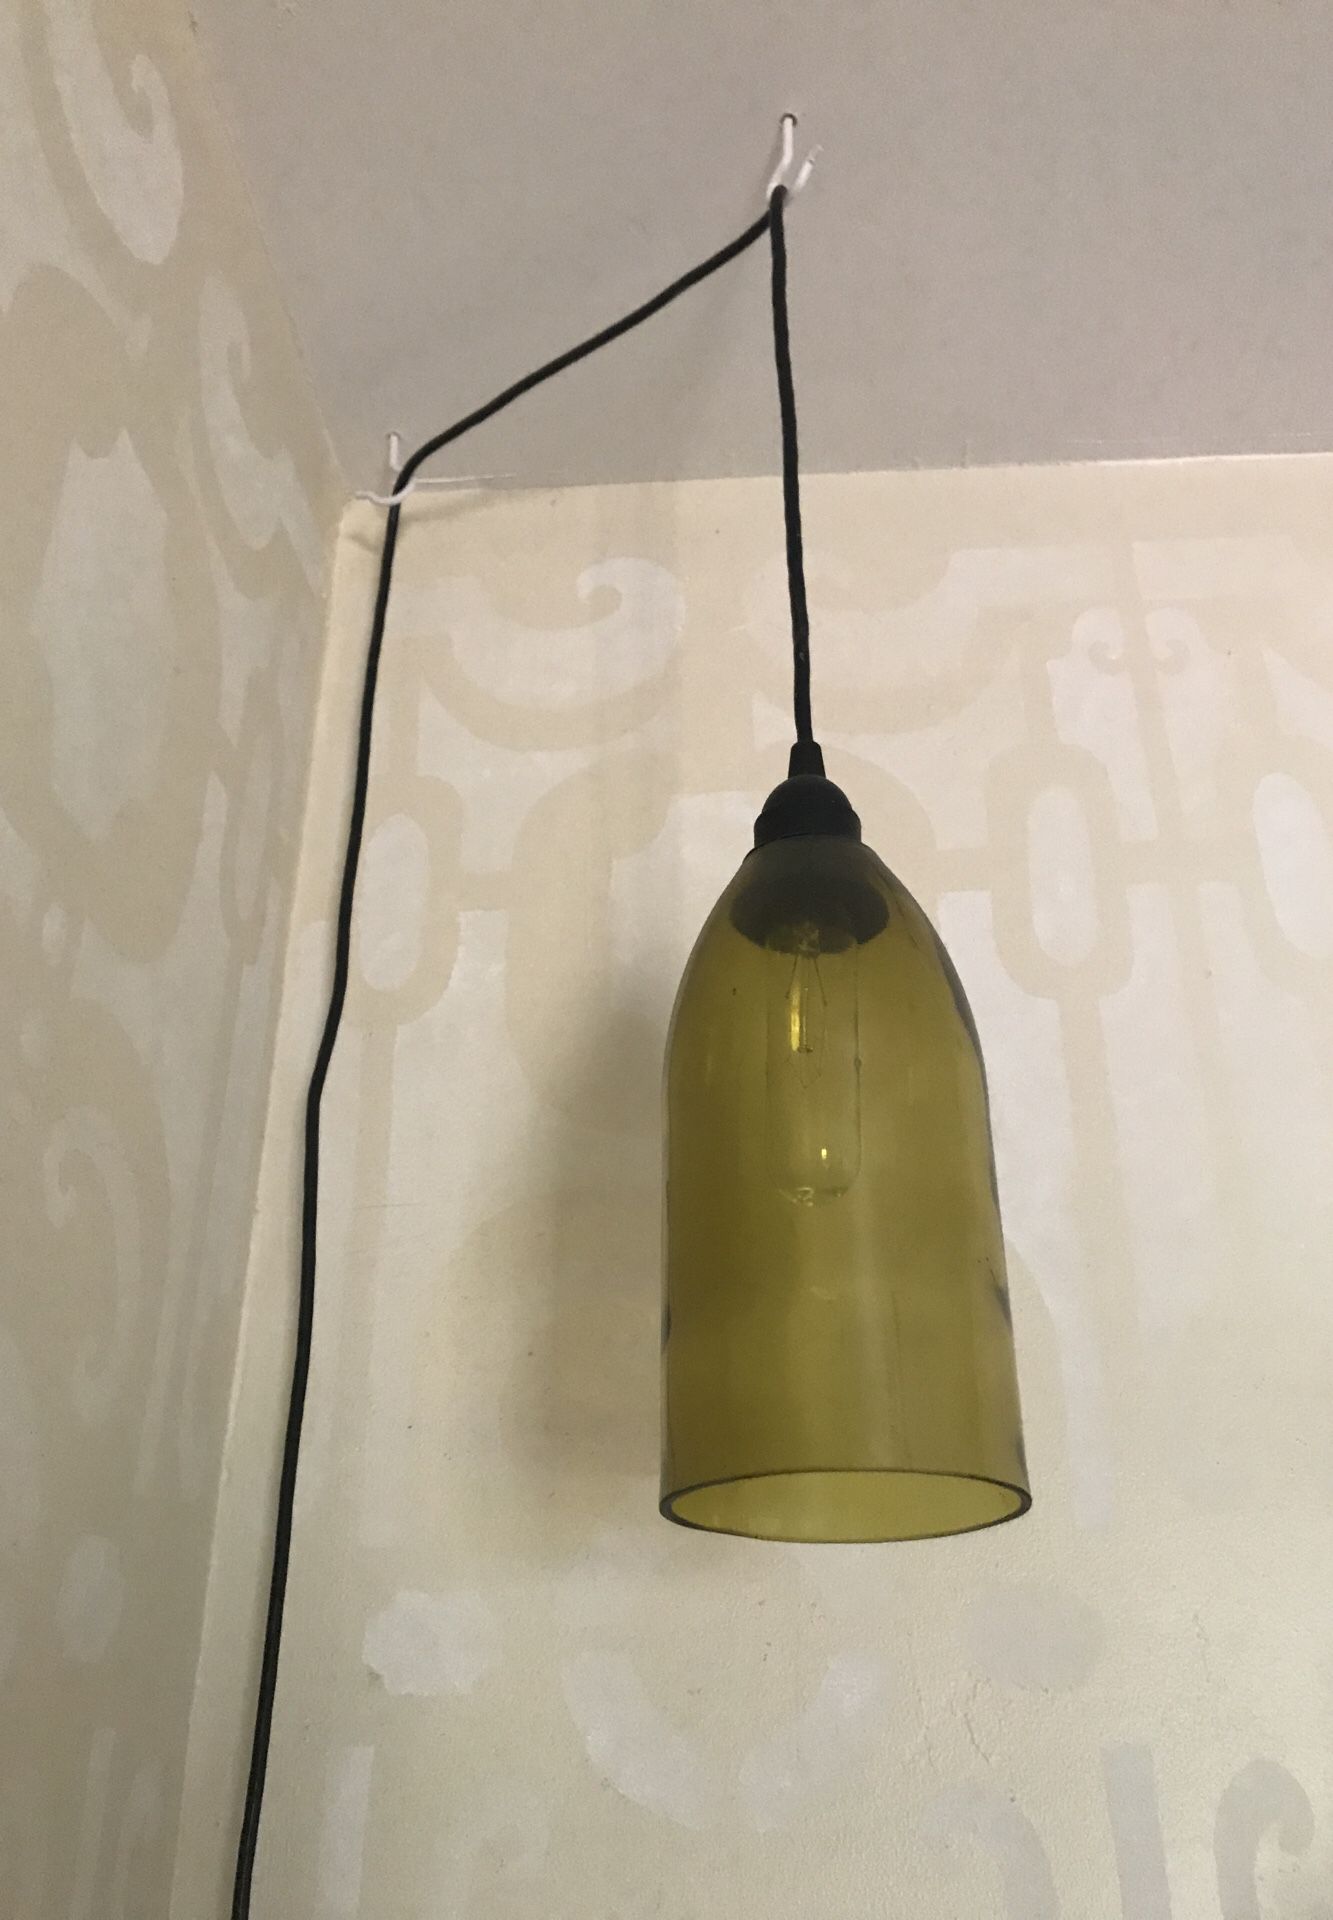 Upcycled wine bottle hanging pendant